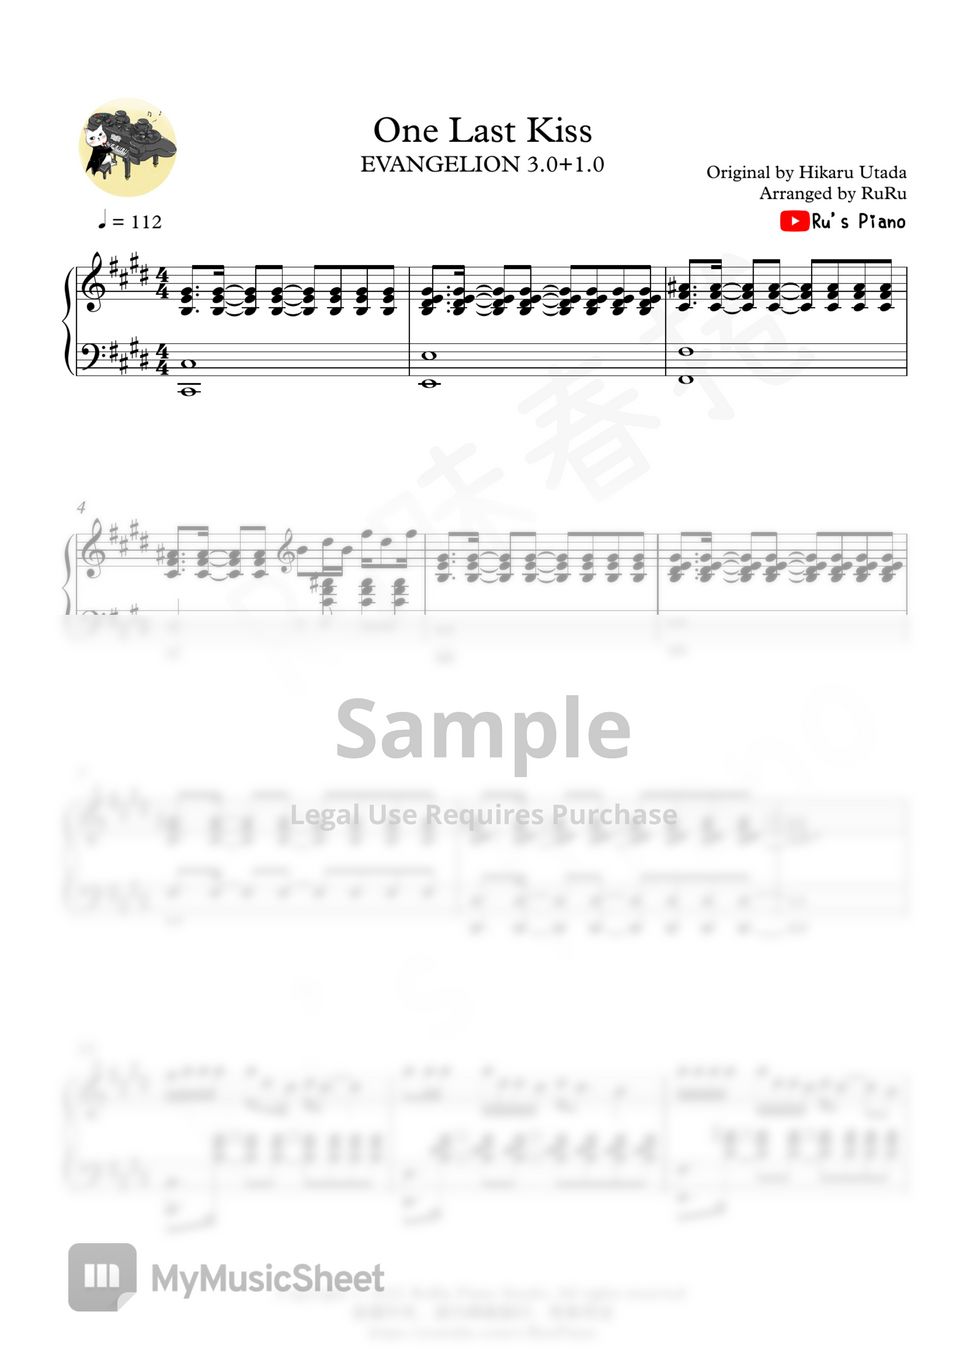 宇多田ヒカル - EVANGELION: 3.0+1.0「One Last Kiss」Full Version (シン・エヴァンゲリオン劇場版𝄇) by Ru's Piano